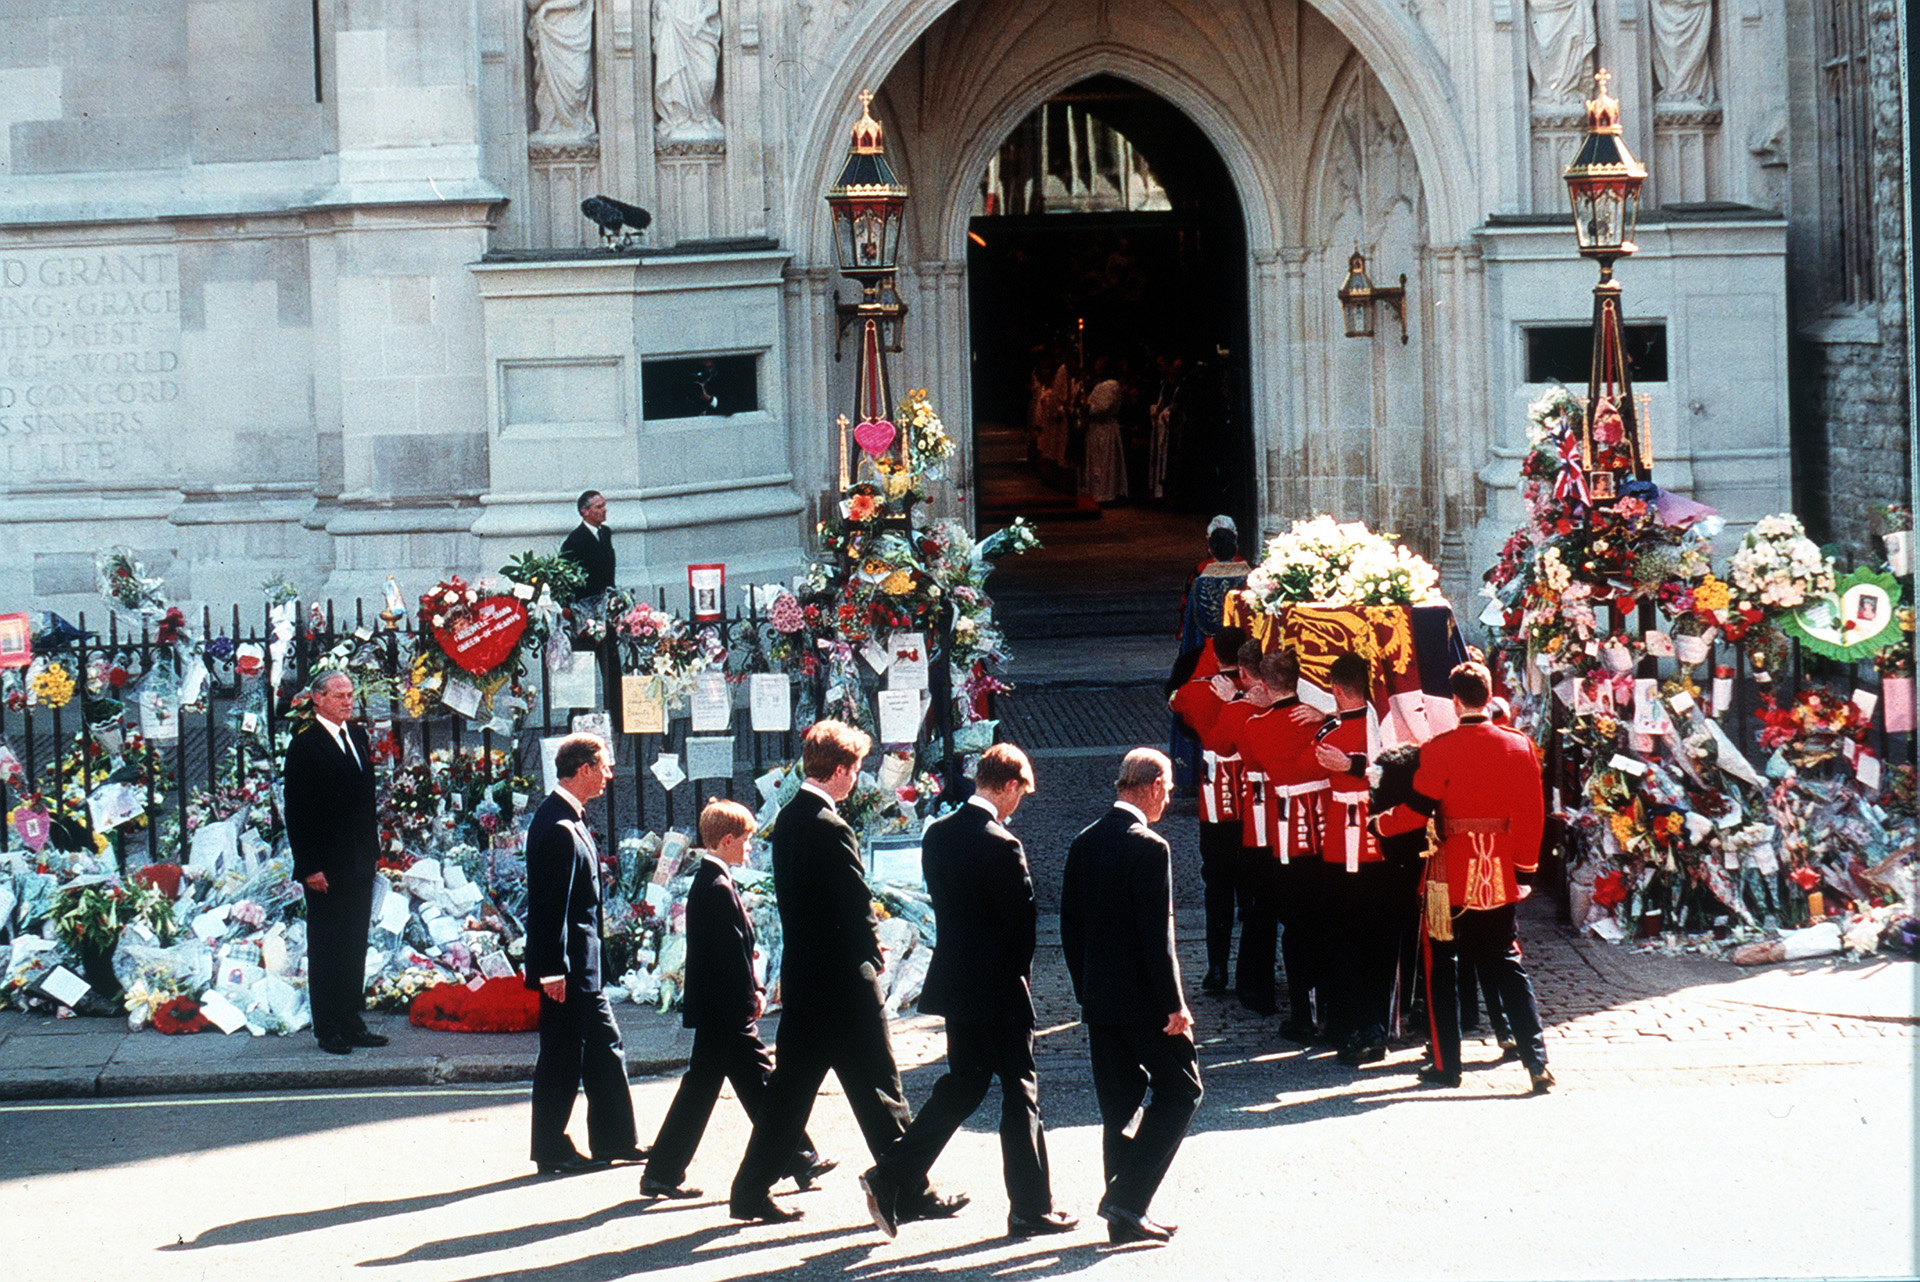 El funeral de Lady Di es uno de los más multitudinarios y recordados por la sociedad inglesa. Sobre el ataúd se colocó el estandarte real, pese a que Diana, tras su divorcio, ya no era miembro de la familia (Photo by Anwar Hussein/Getty Images)